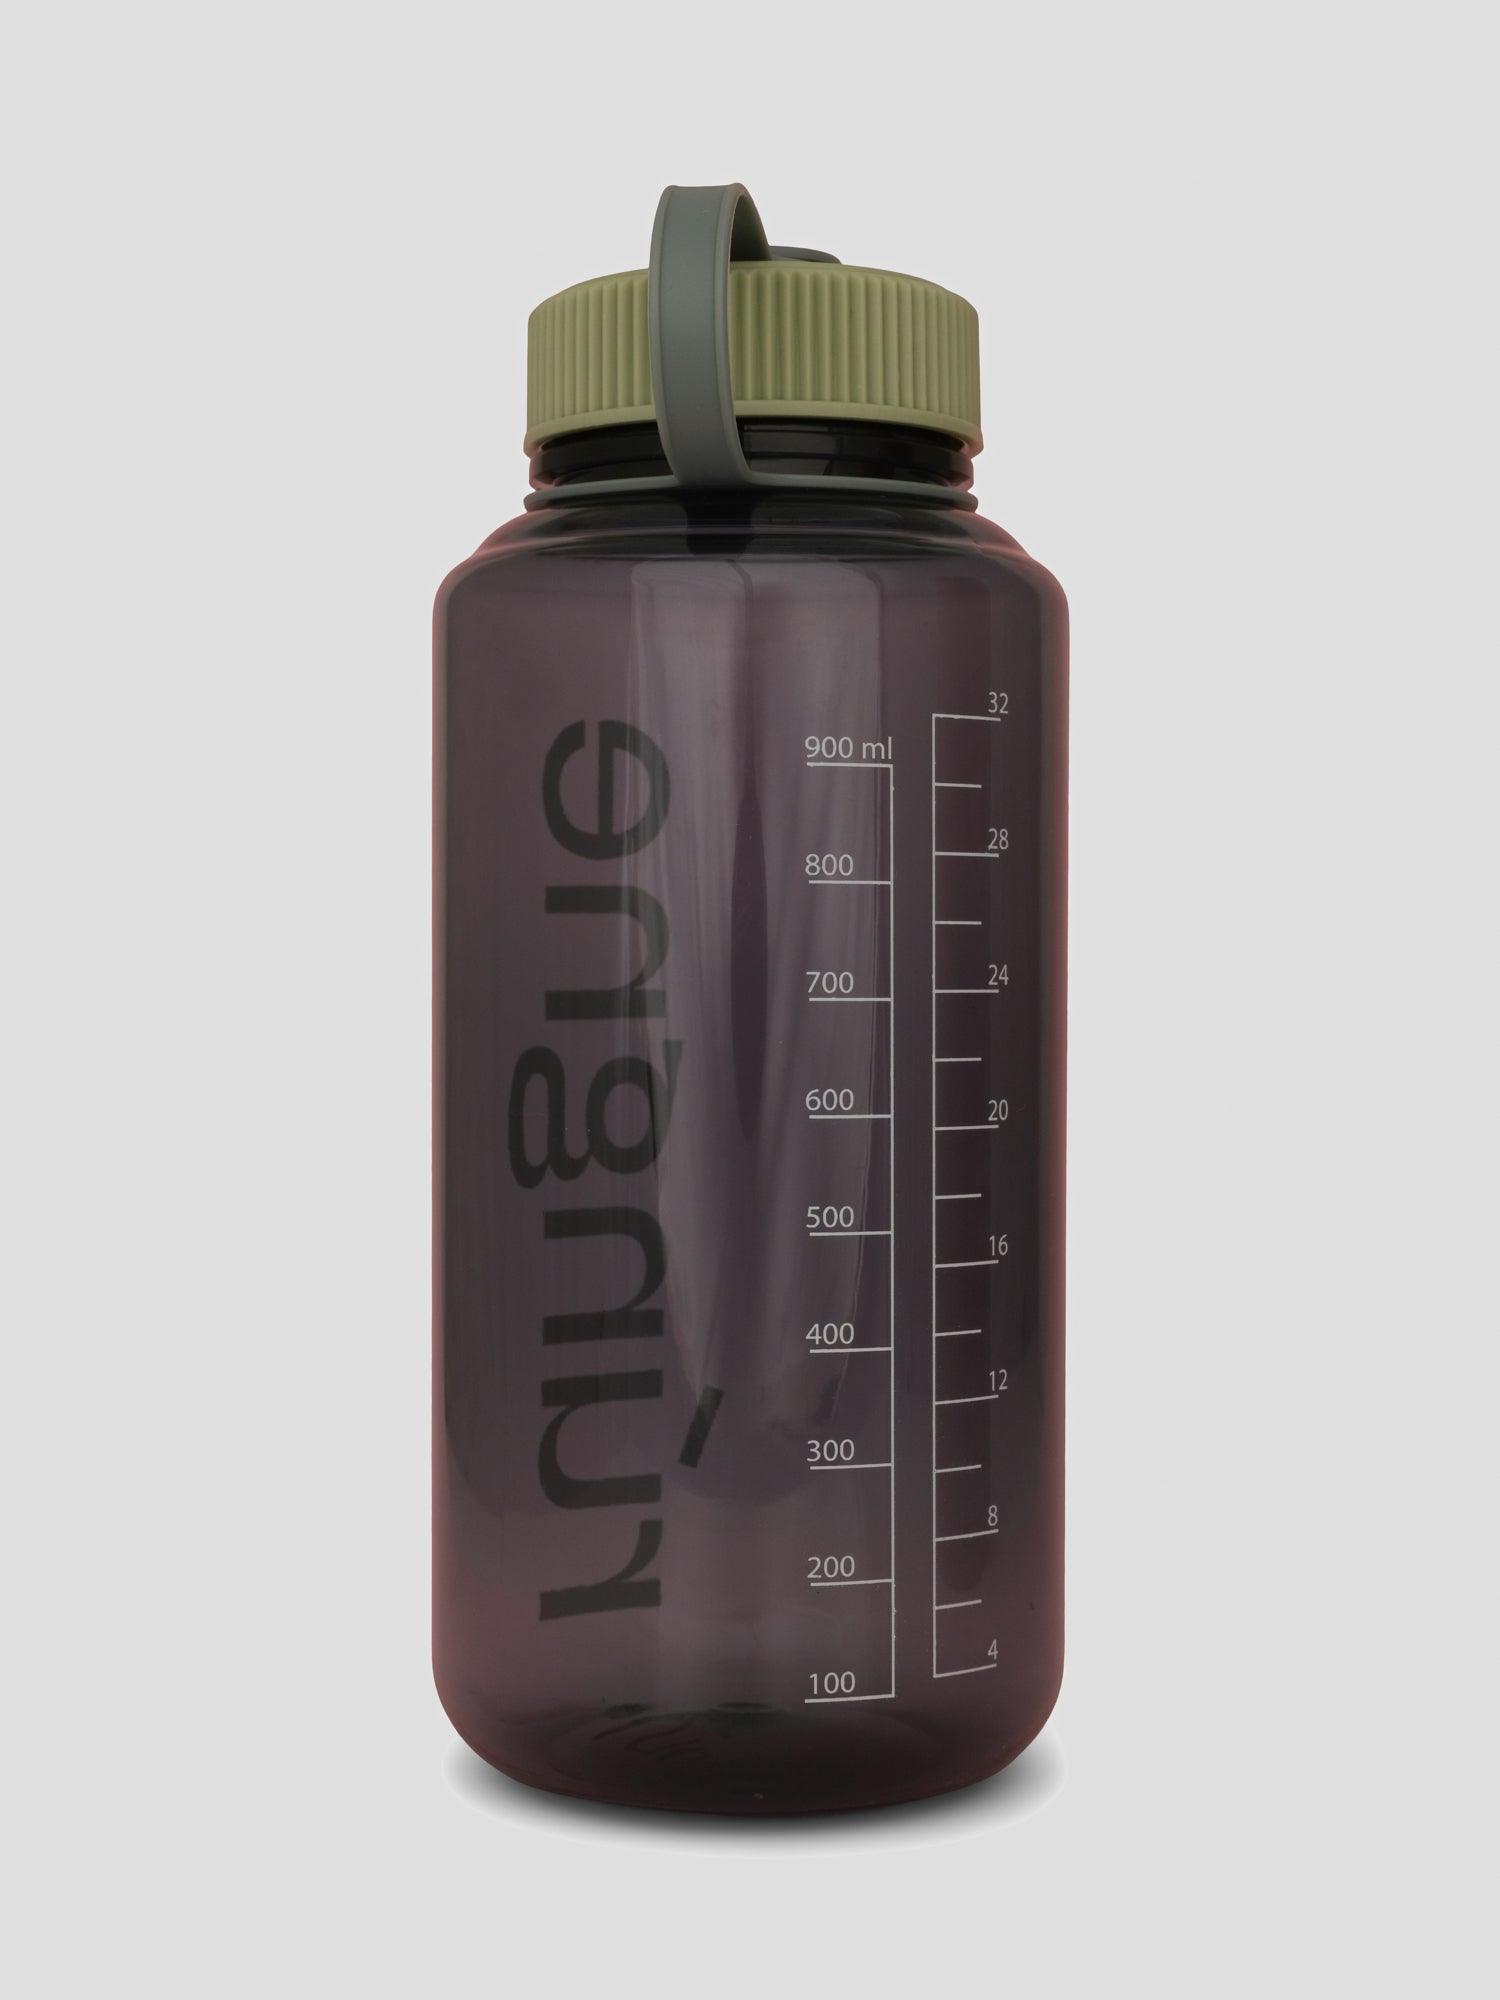 Rúngne Water bottle - Rúngne